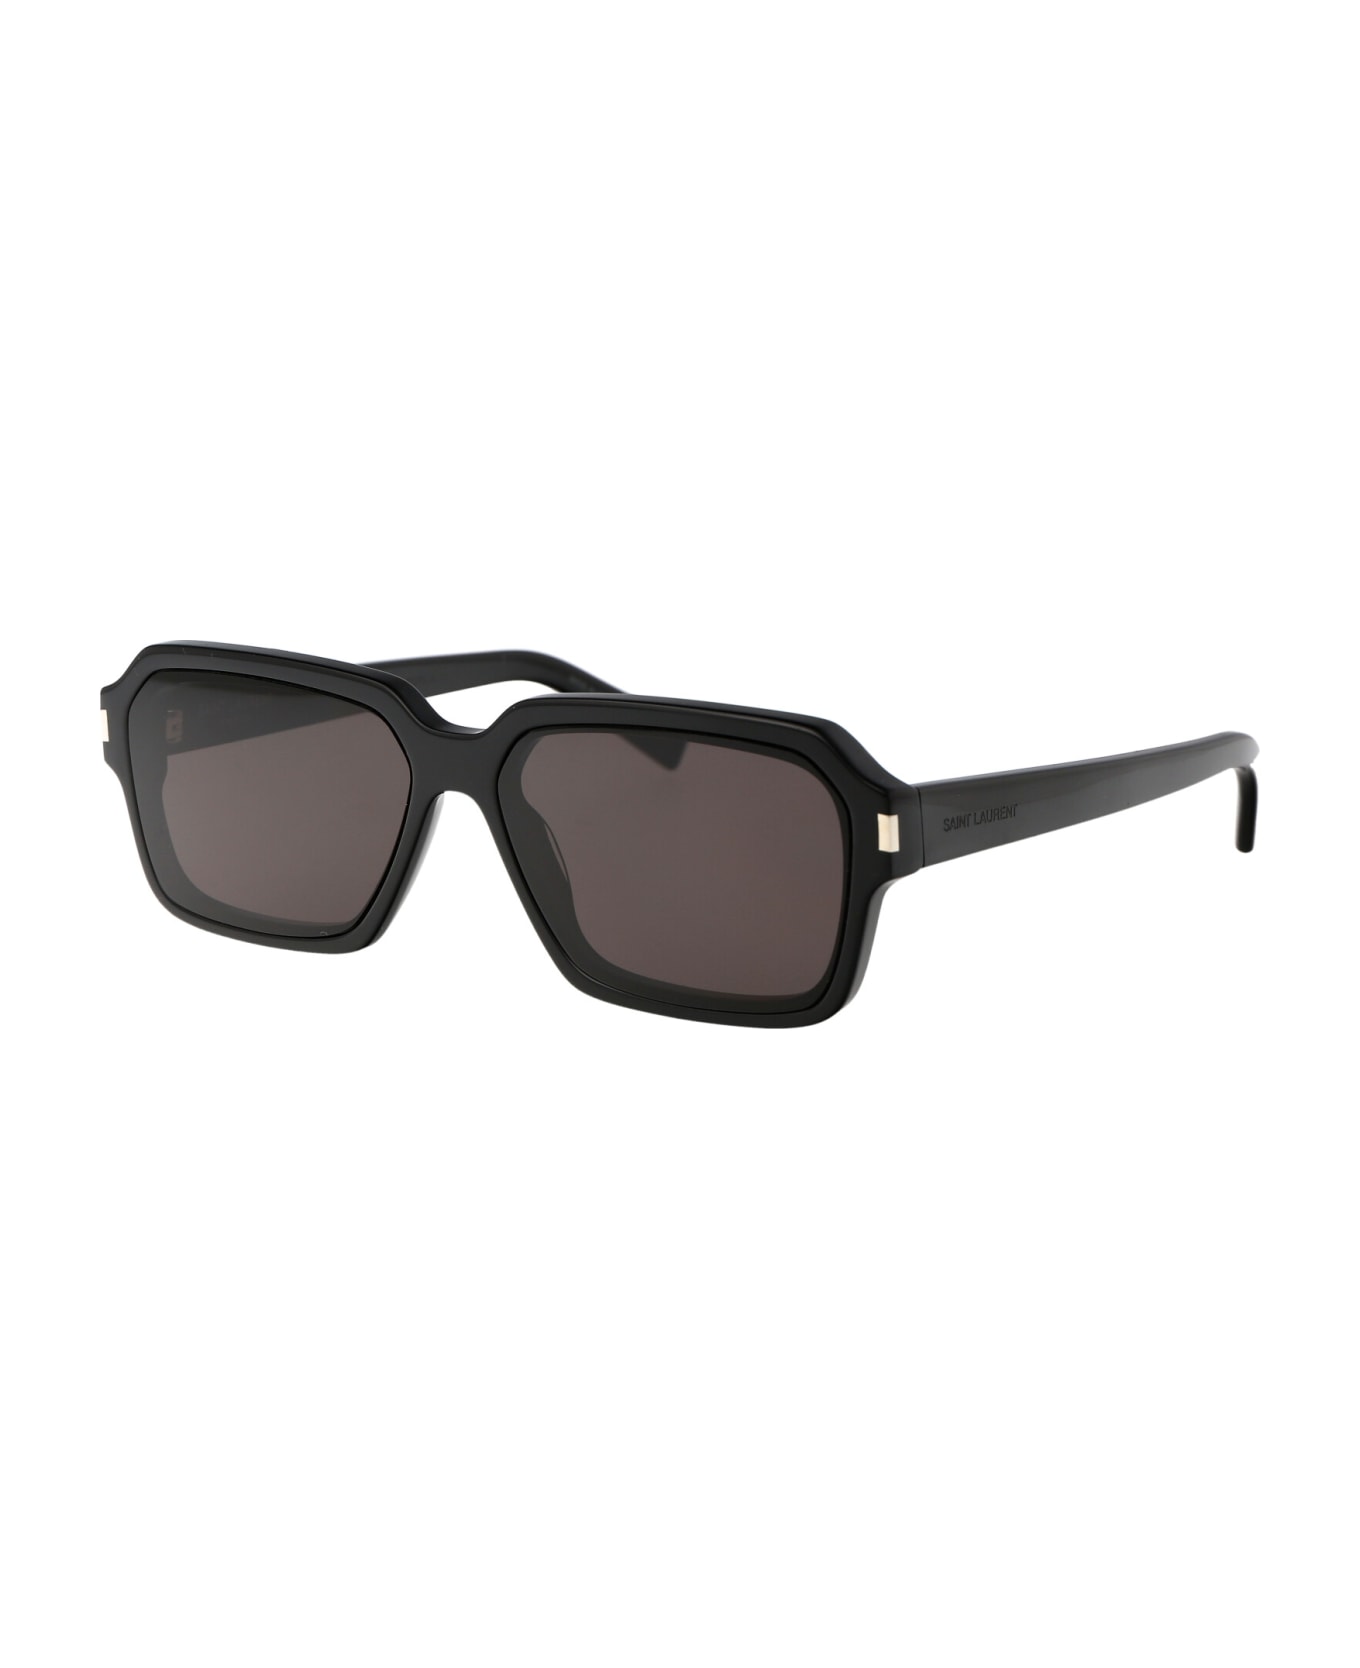 Saint Laurent Eyewear Sl 611 Sunglasses - 001 BLACK BLACK BLACK サングラス